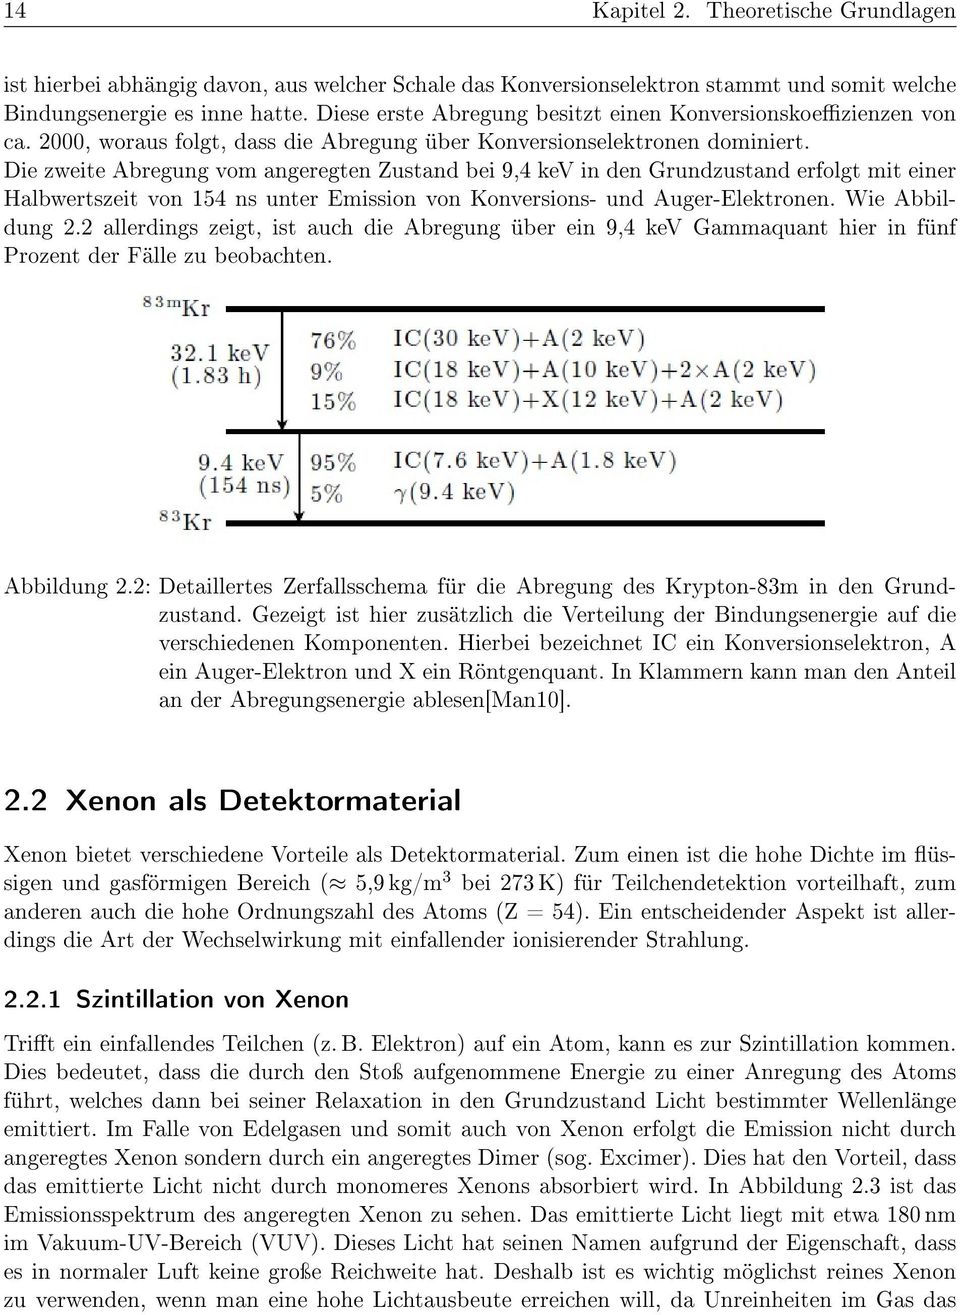 Die zweite Abregung vom angeregten Zustand bei 9,4 kev in den Grundzustand erfolgt mit einer Halbwertszeit von 154 ns unter Emission von Konversions- und Auger-Elektronen. Wie Abbildung 2.